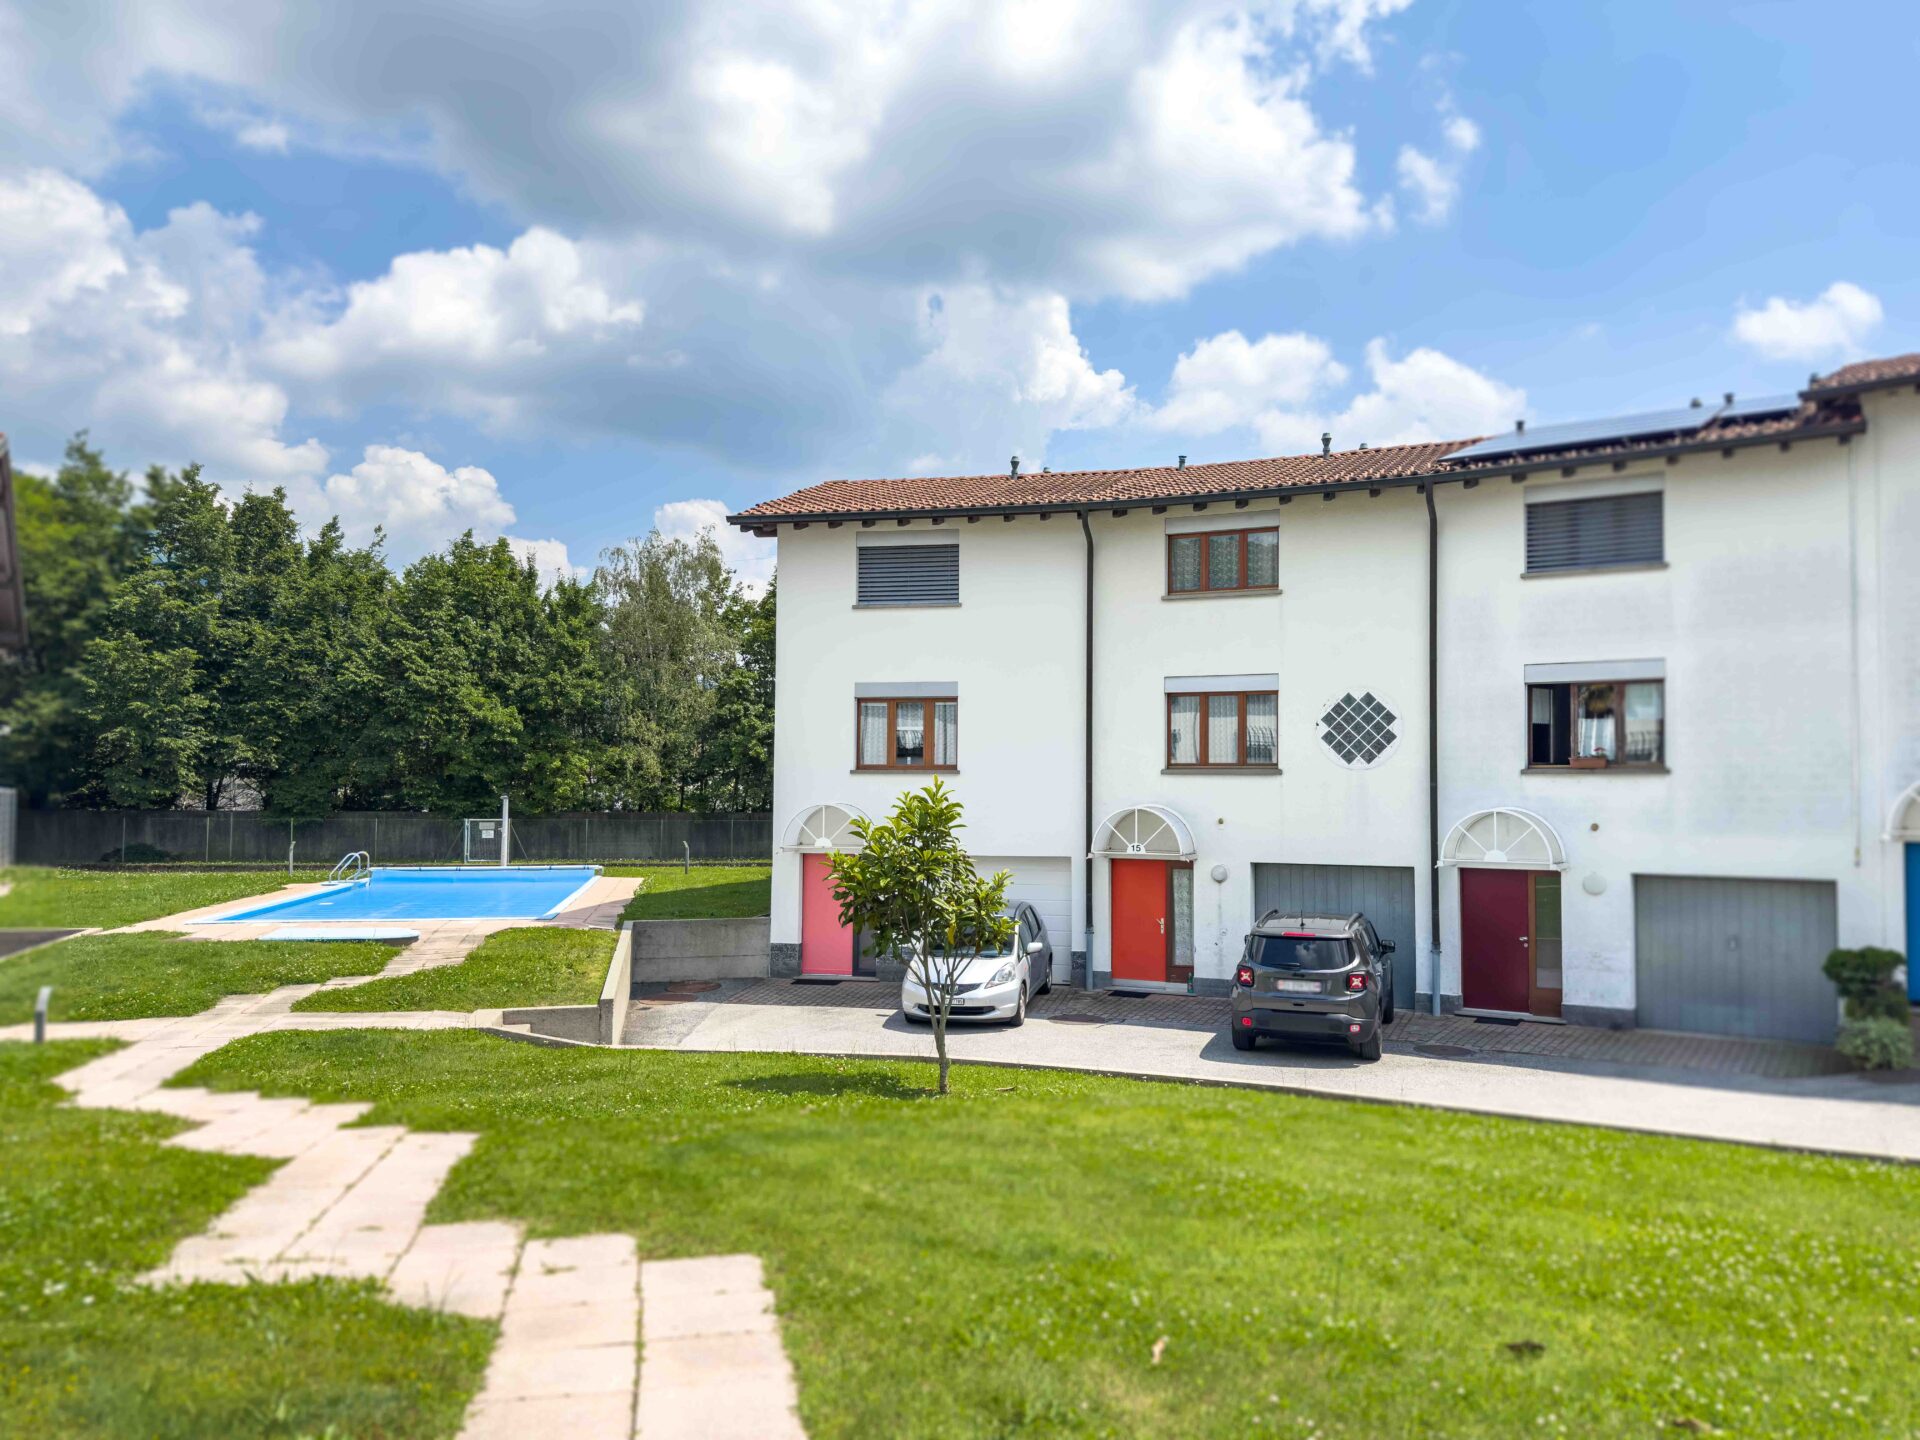 Villetta a schiera in complesso residenziale con piscina condominiale in vendita a Rancate